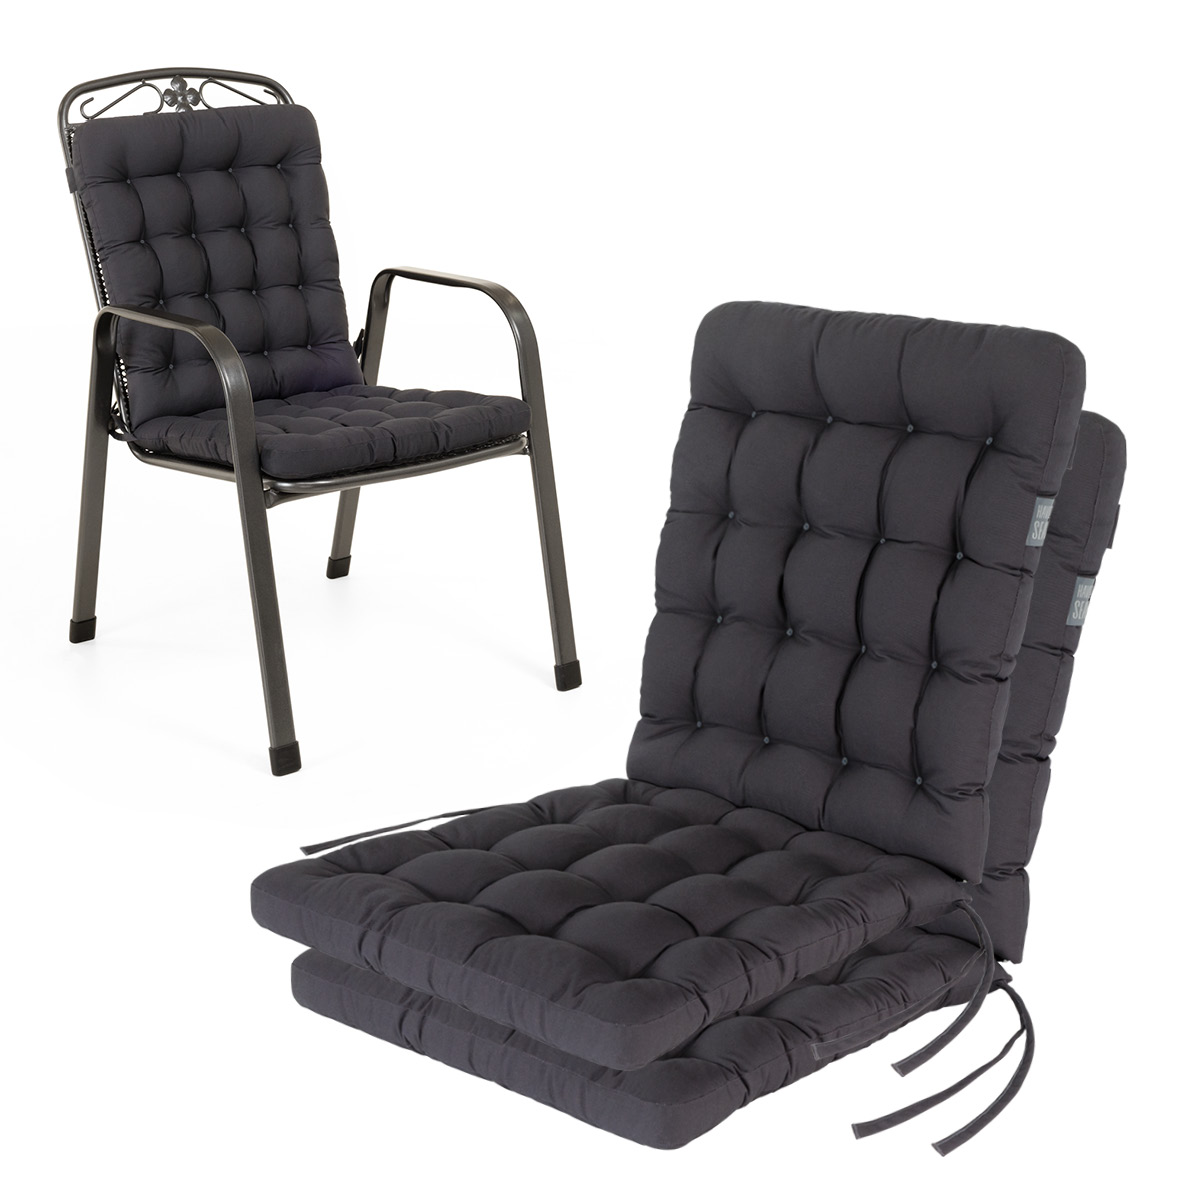 Cuscino per sedia con schienale basso 100x48 cm | Grigio / Antracite | Set da 2 %